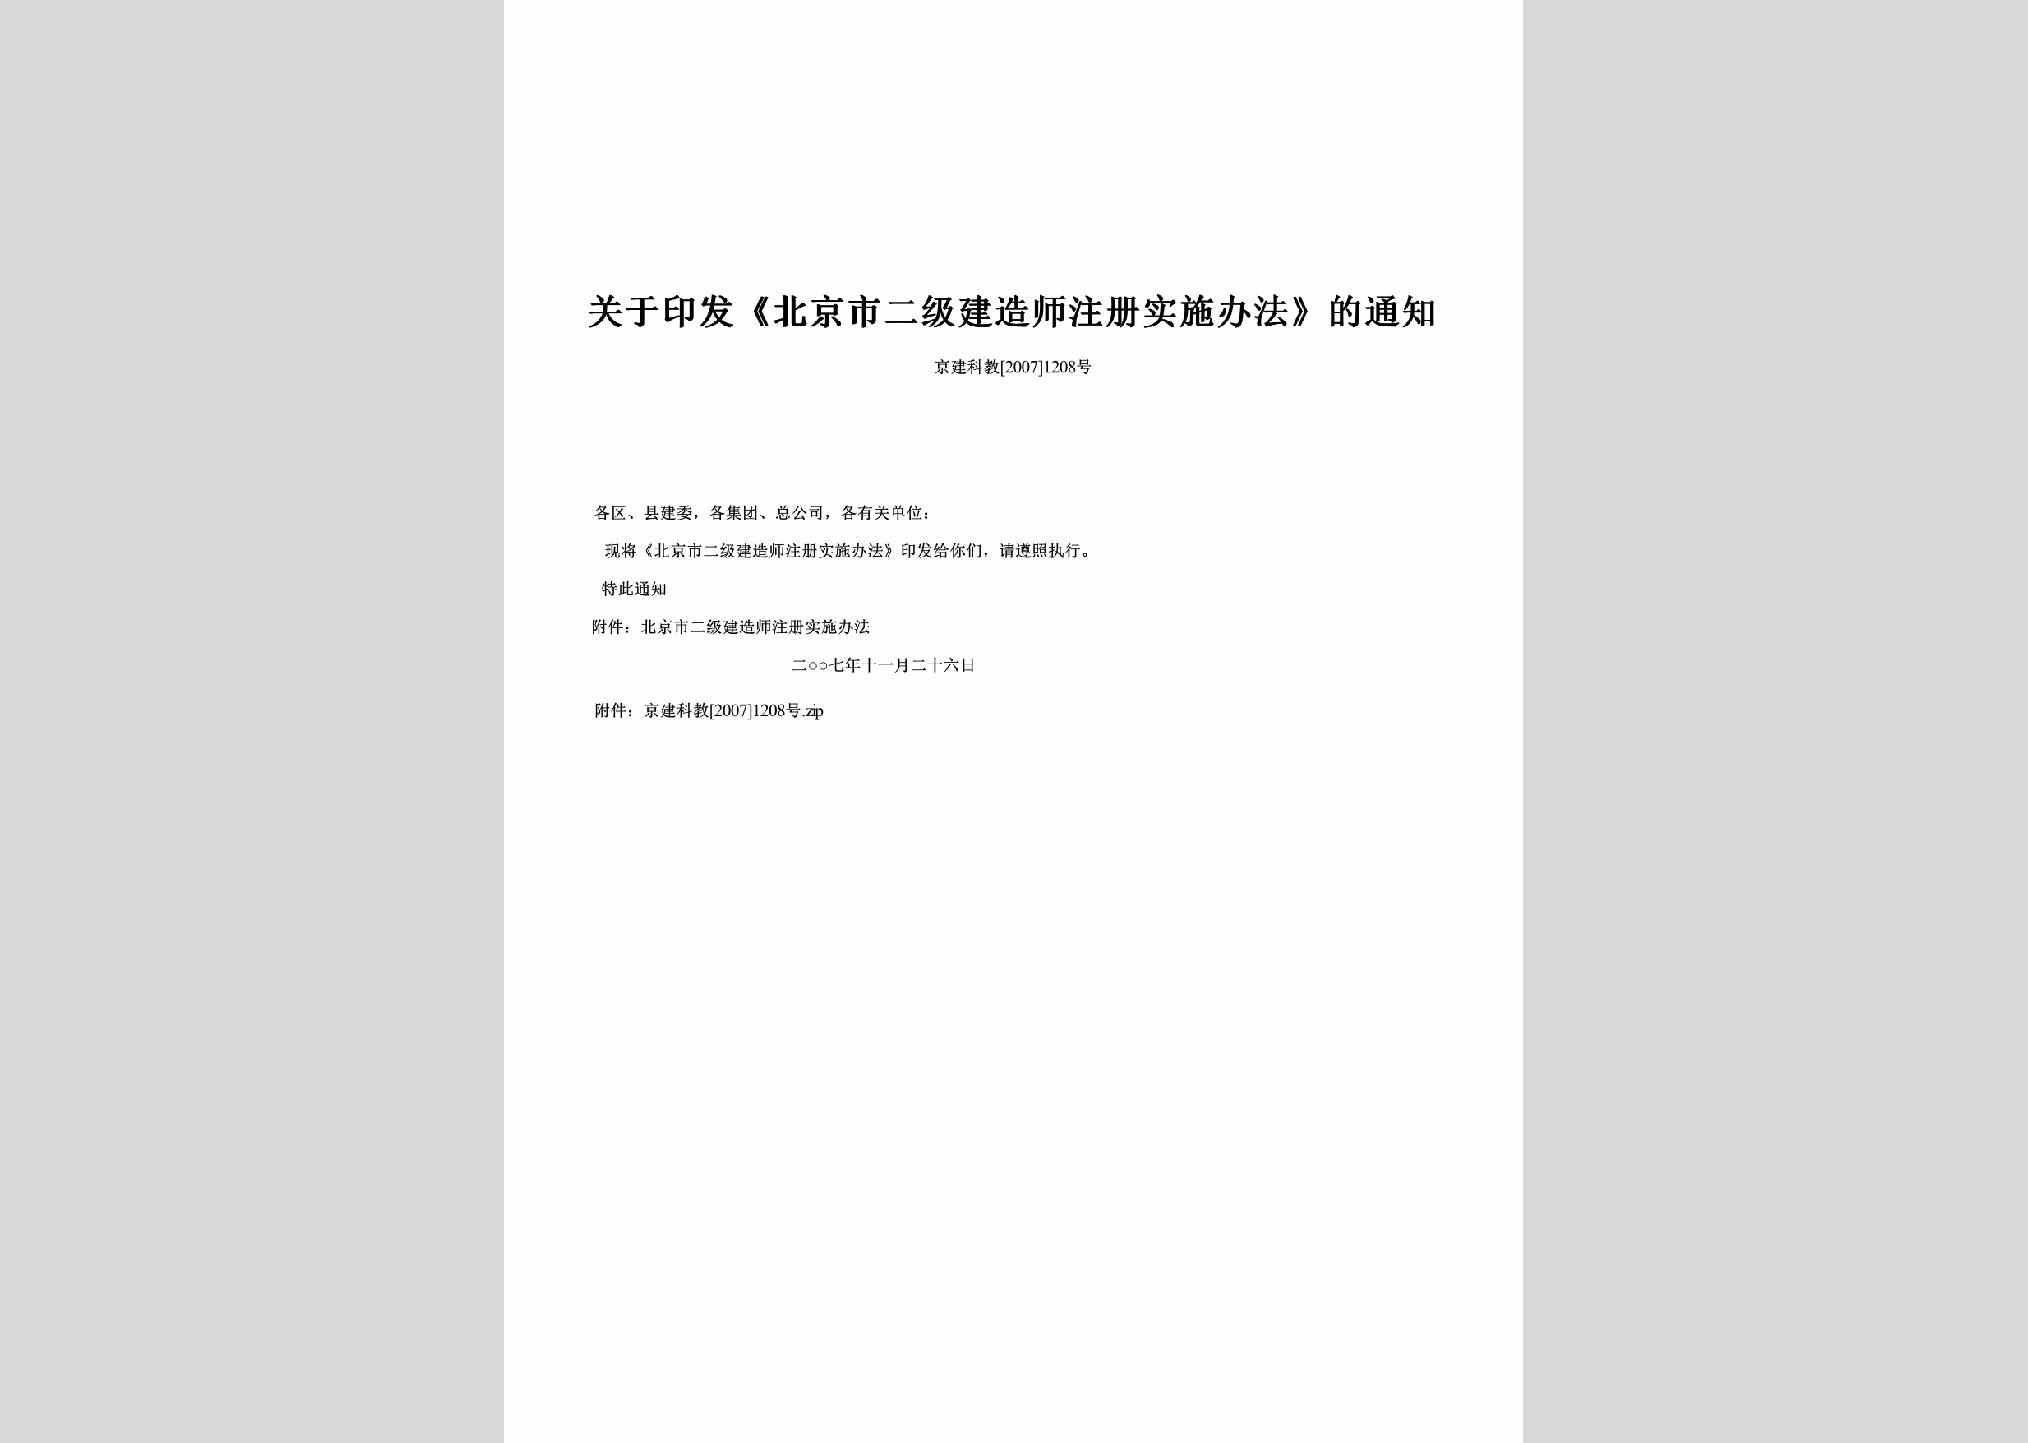 京建科教[2007]1208号：关于印发《北京市二级建造师注册实施办法》的通知